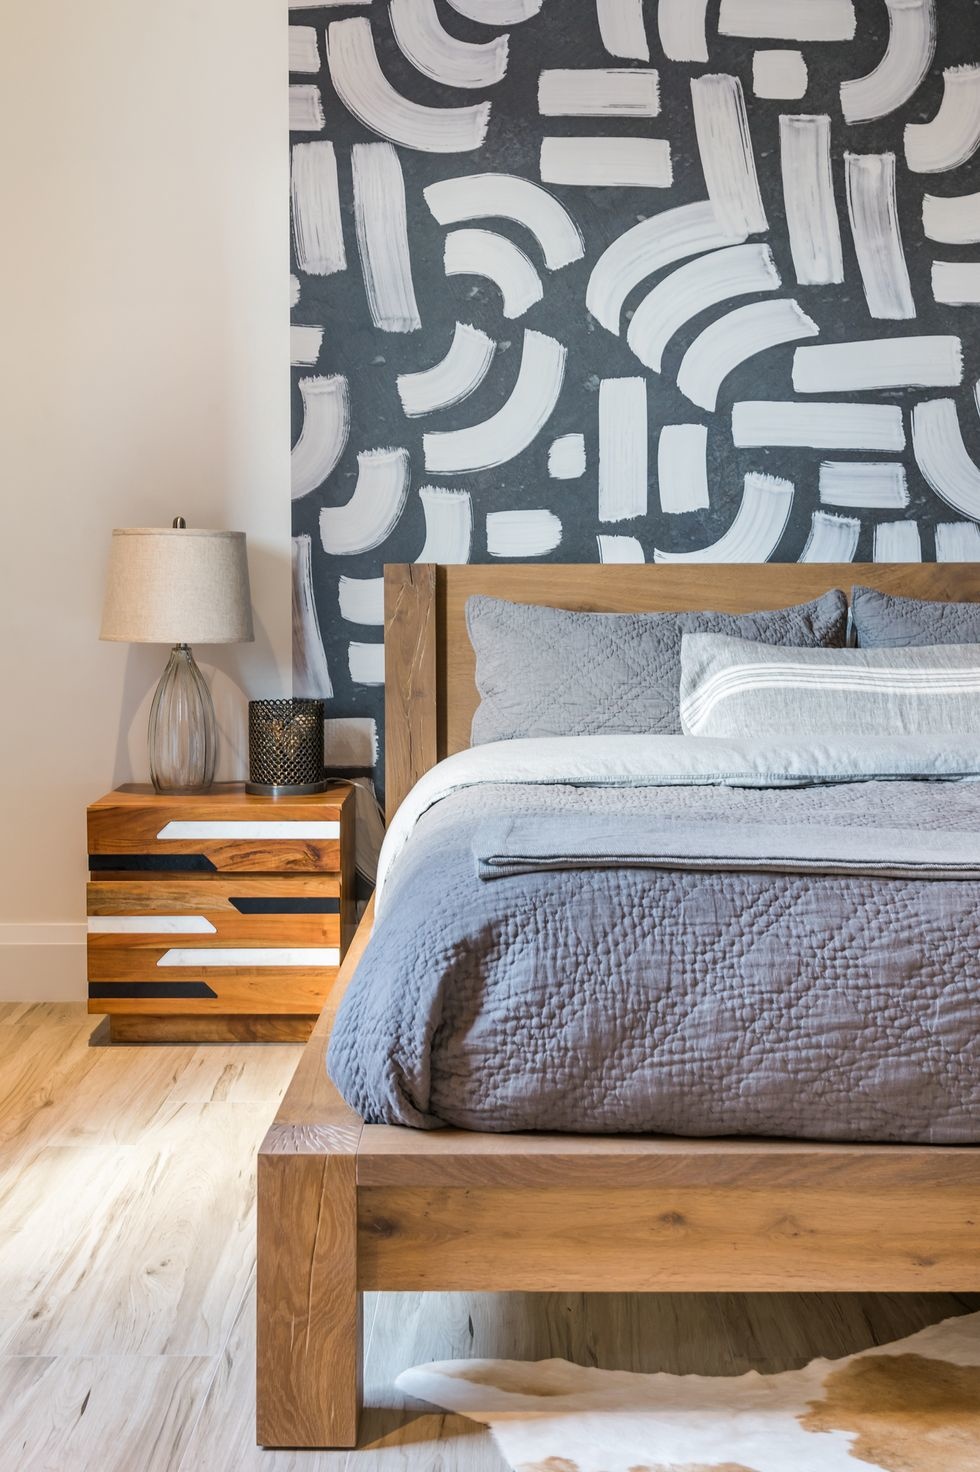 Phòng ngủ mộc mạc do Maritza Capiro Designs thiết kế. Bên cạnh giường gỗ thấp sàn tạo cảm giác căn phòng 'cao' hơn thực tế thì chiếc táp đầu giường và giấy dán họa tiết độc đáo cũng góp phần tạo nên sự lôi cuốn cho không gian thư giãn.